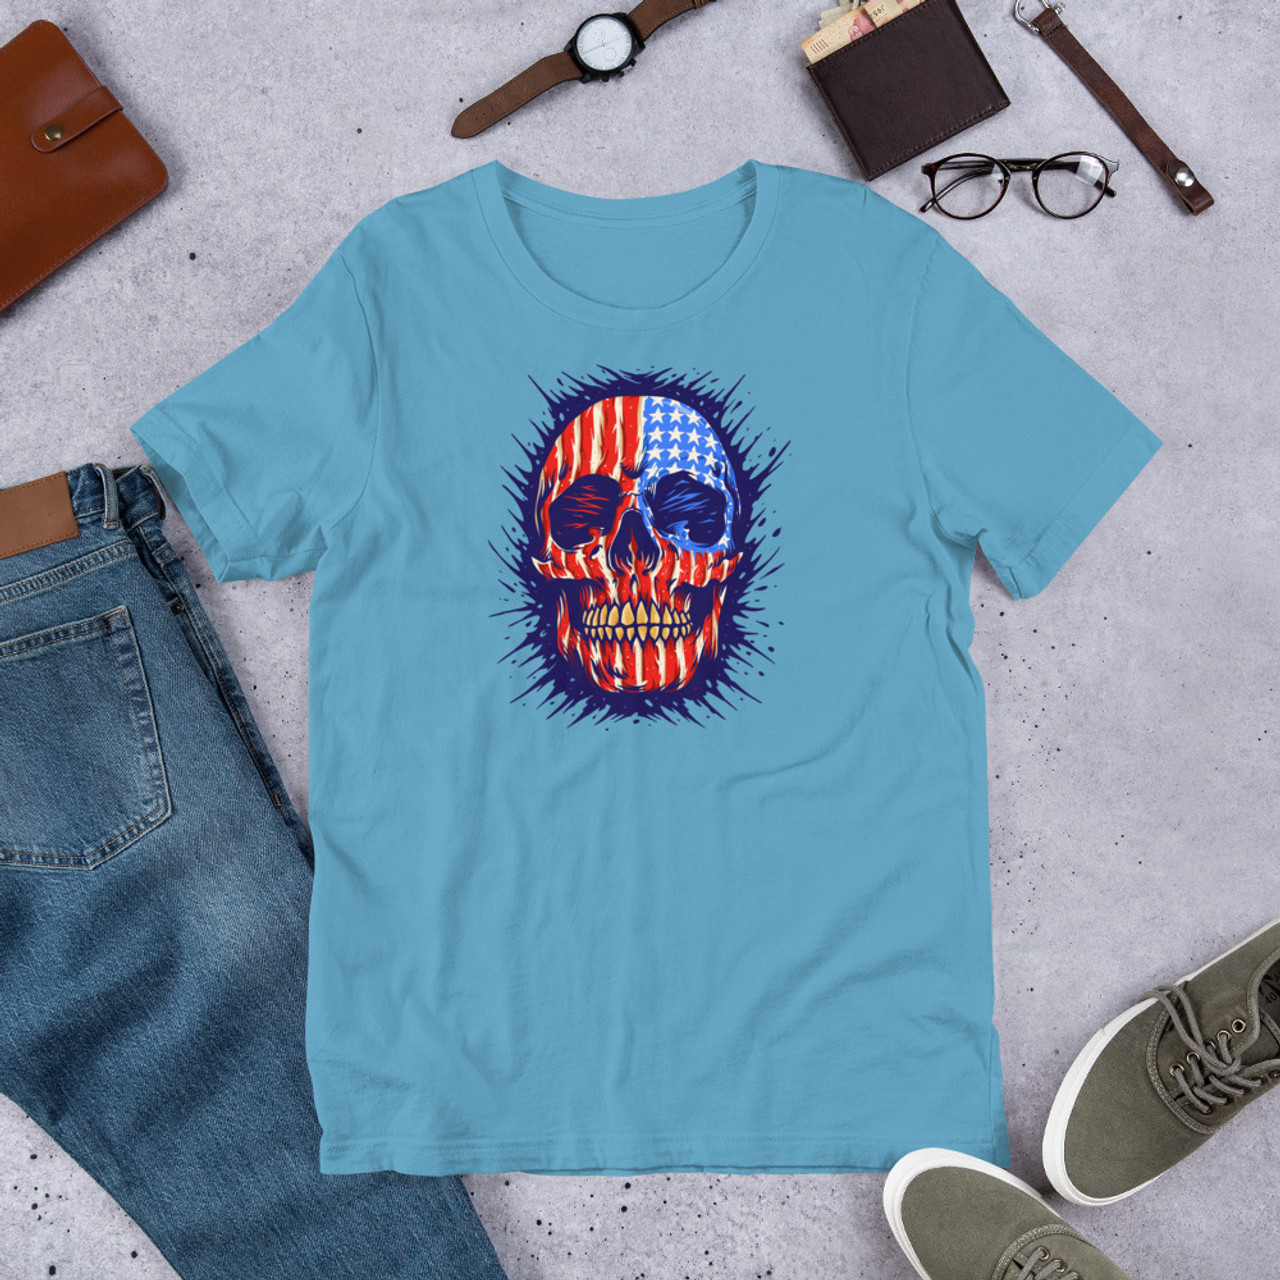 Ocean Blue T-Shirt - Bella + Canvas 3001 American Skull